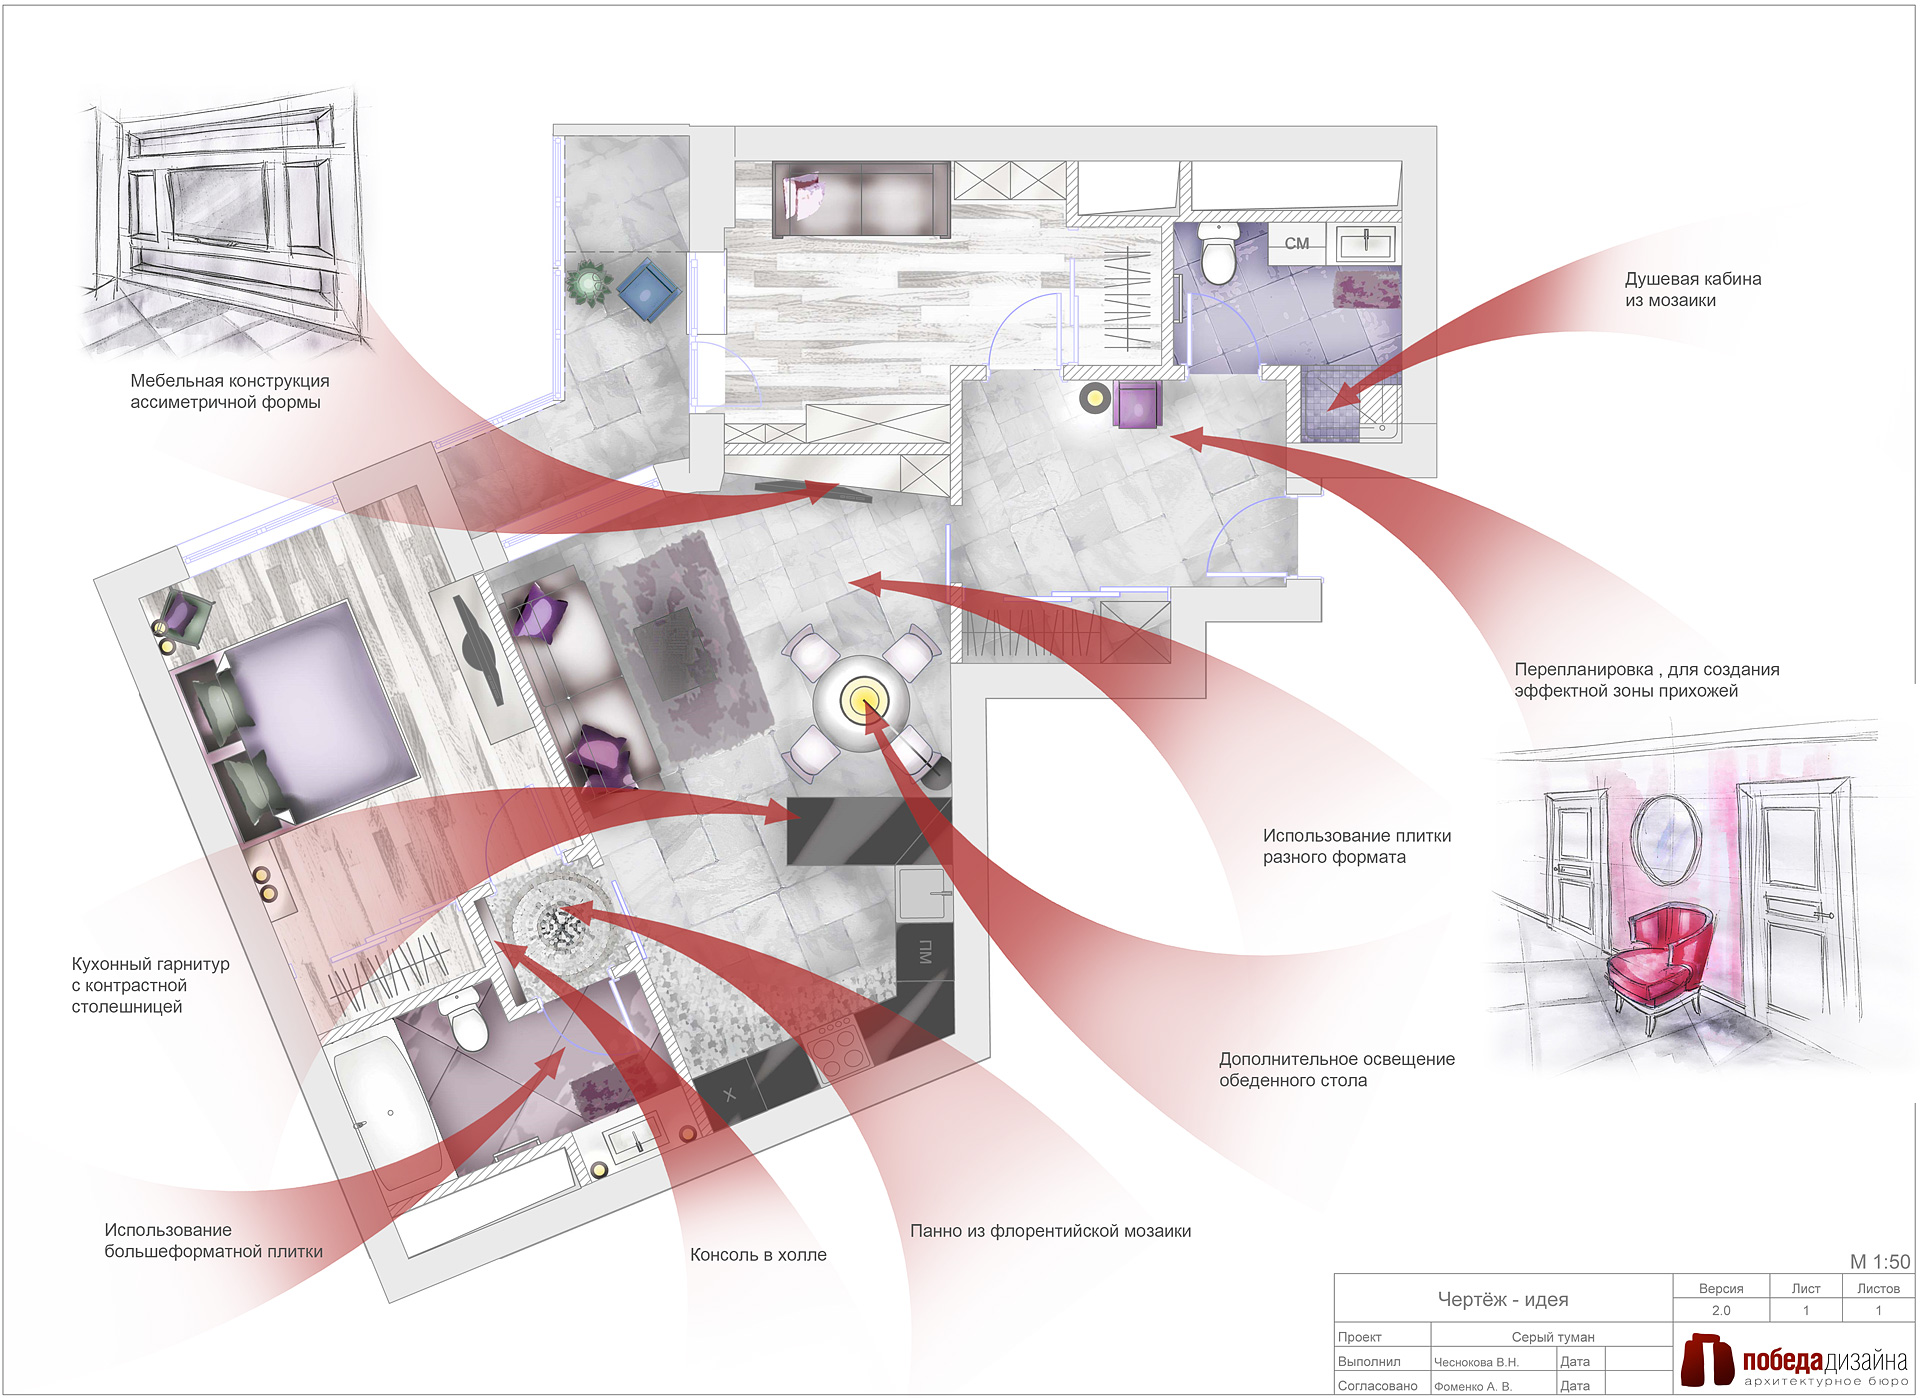 Дизайн интерьера необычной квартиры в серых тонах